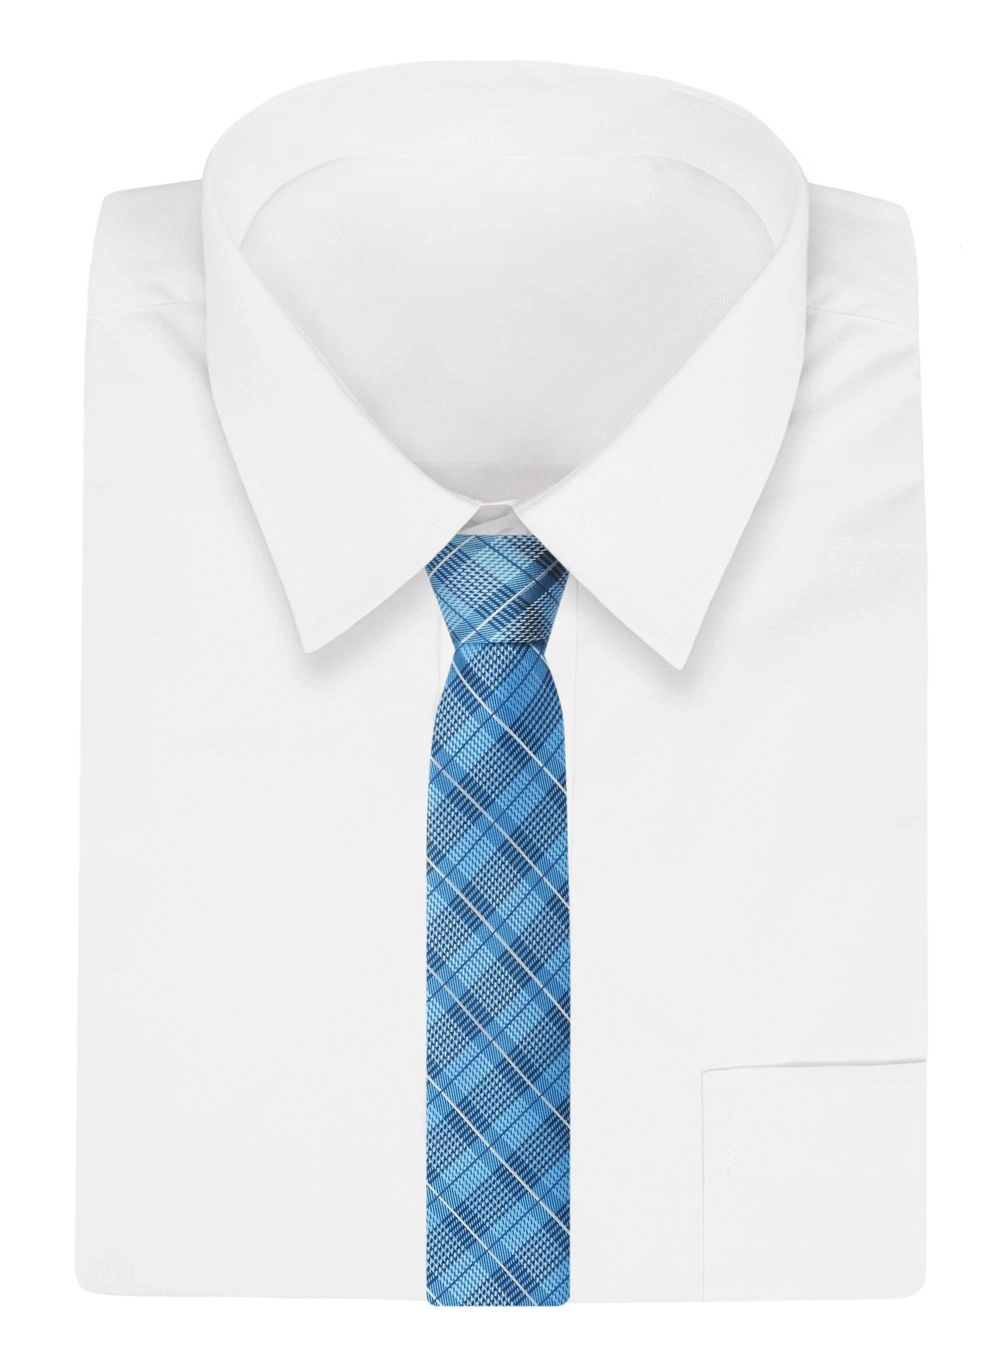 Krawat Niebieski, Błękitny w Kratkę, Elegancki, 7cm, Klasyczny, Męski -ALTIES